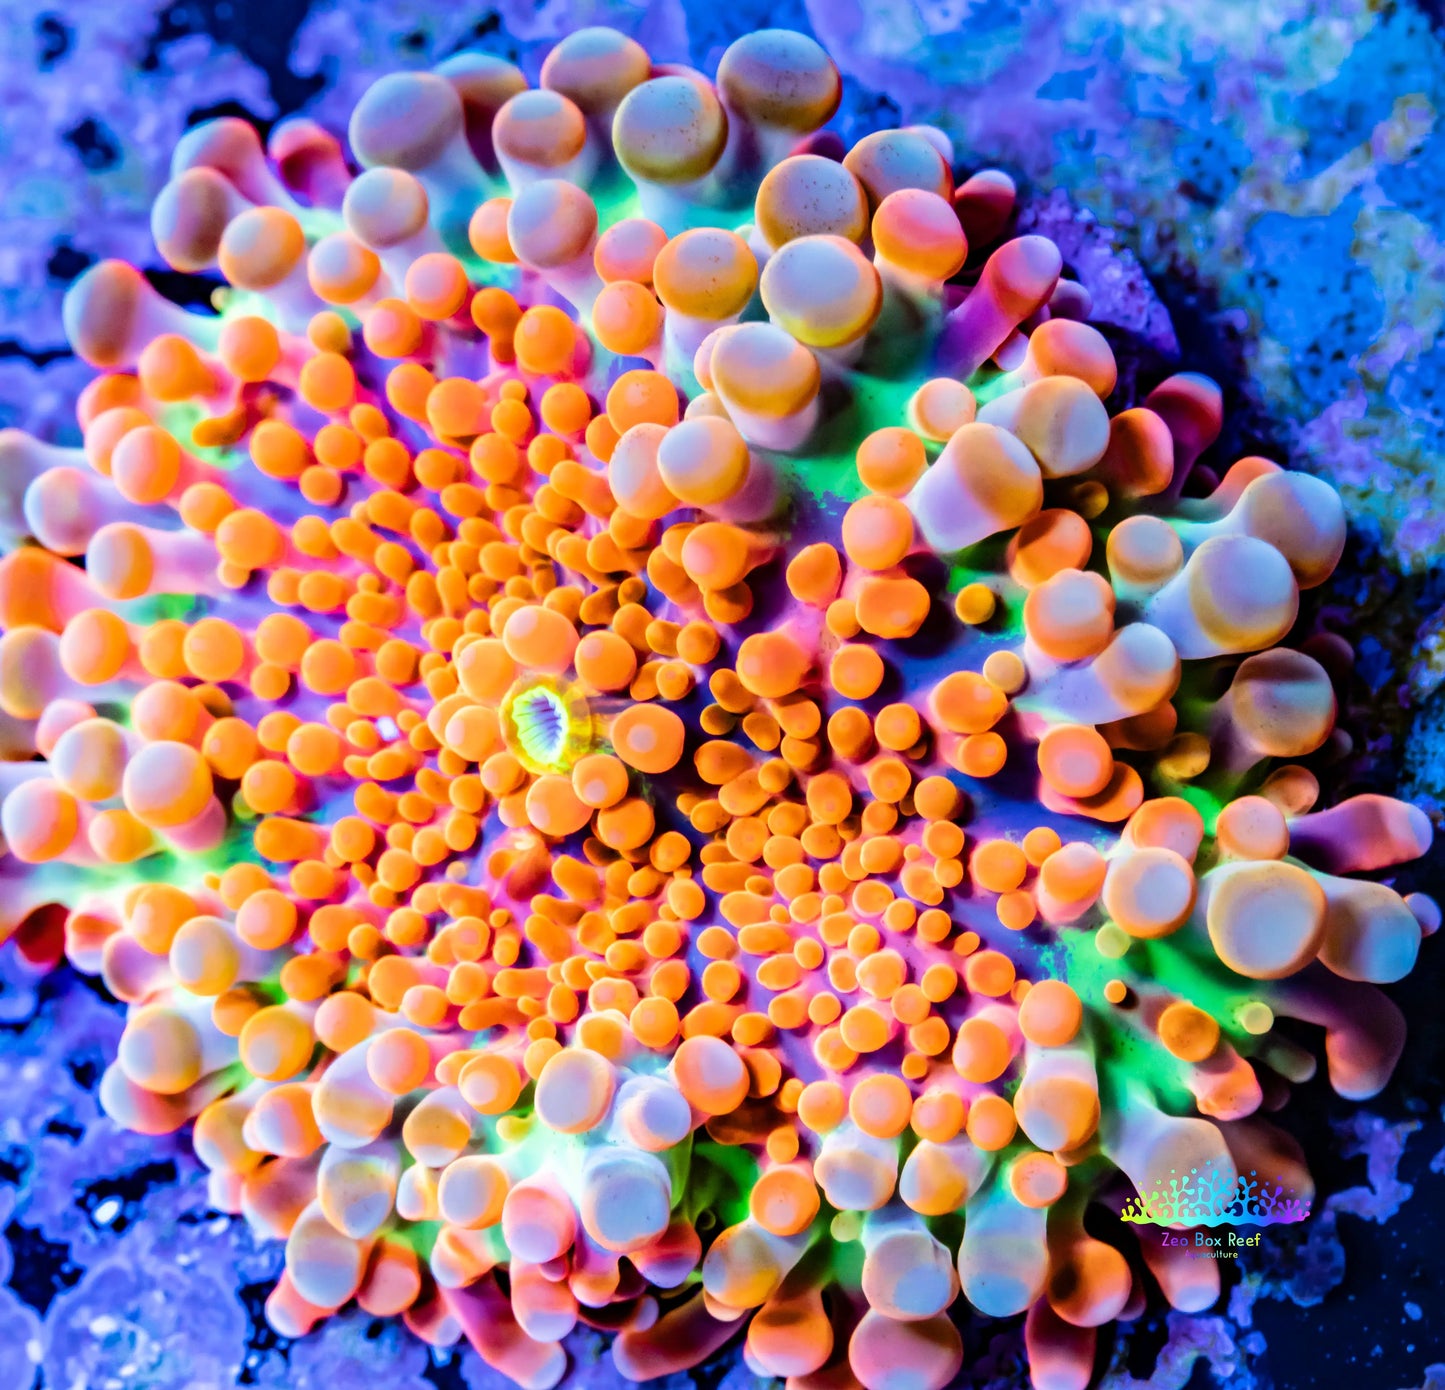 Soft Coral- Ultra Orange Ricordea  WYSIWYG 2.5cm Soft Coral- Ultra Orange Ricordea  WYSIWYG 2.5cm Soft Coral Soft Coral- Ultra Orange Ricordea  WYSIWYG 2.5cm Zeo Box Reef